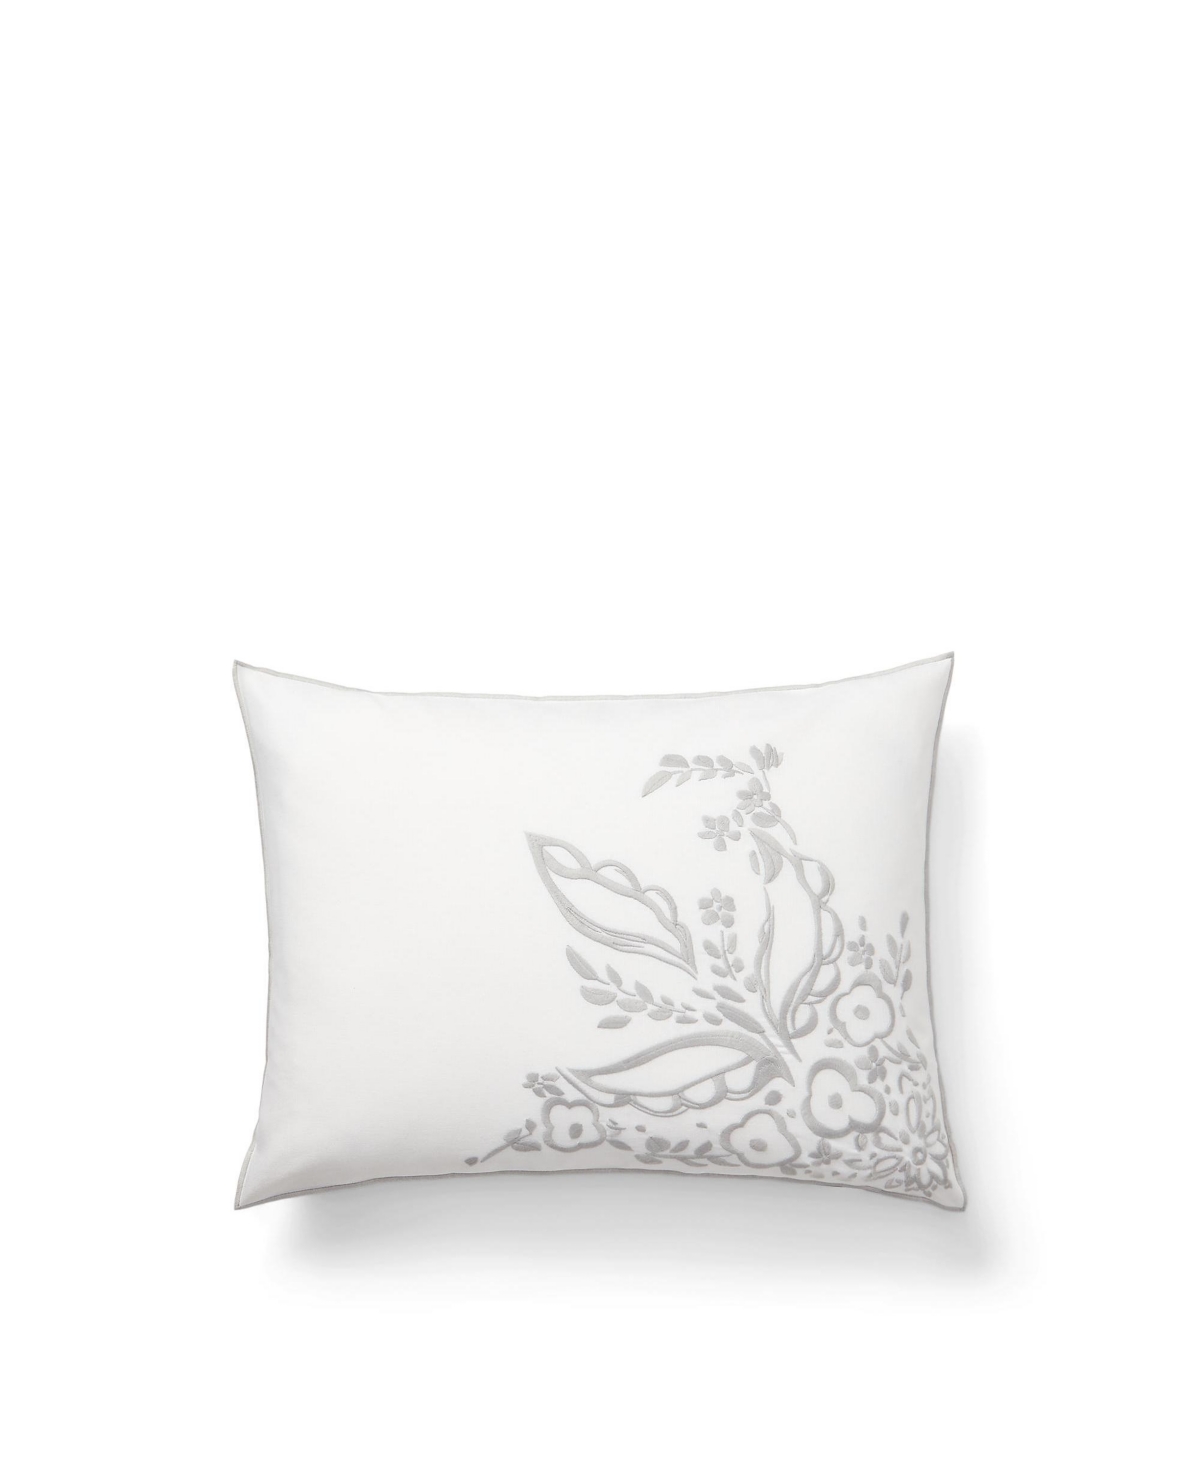 Lauren Ralph Lauren Naomi Embroidery Decorative Pillow, 15" X 20" Bedding In Multi